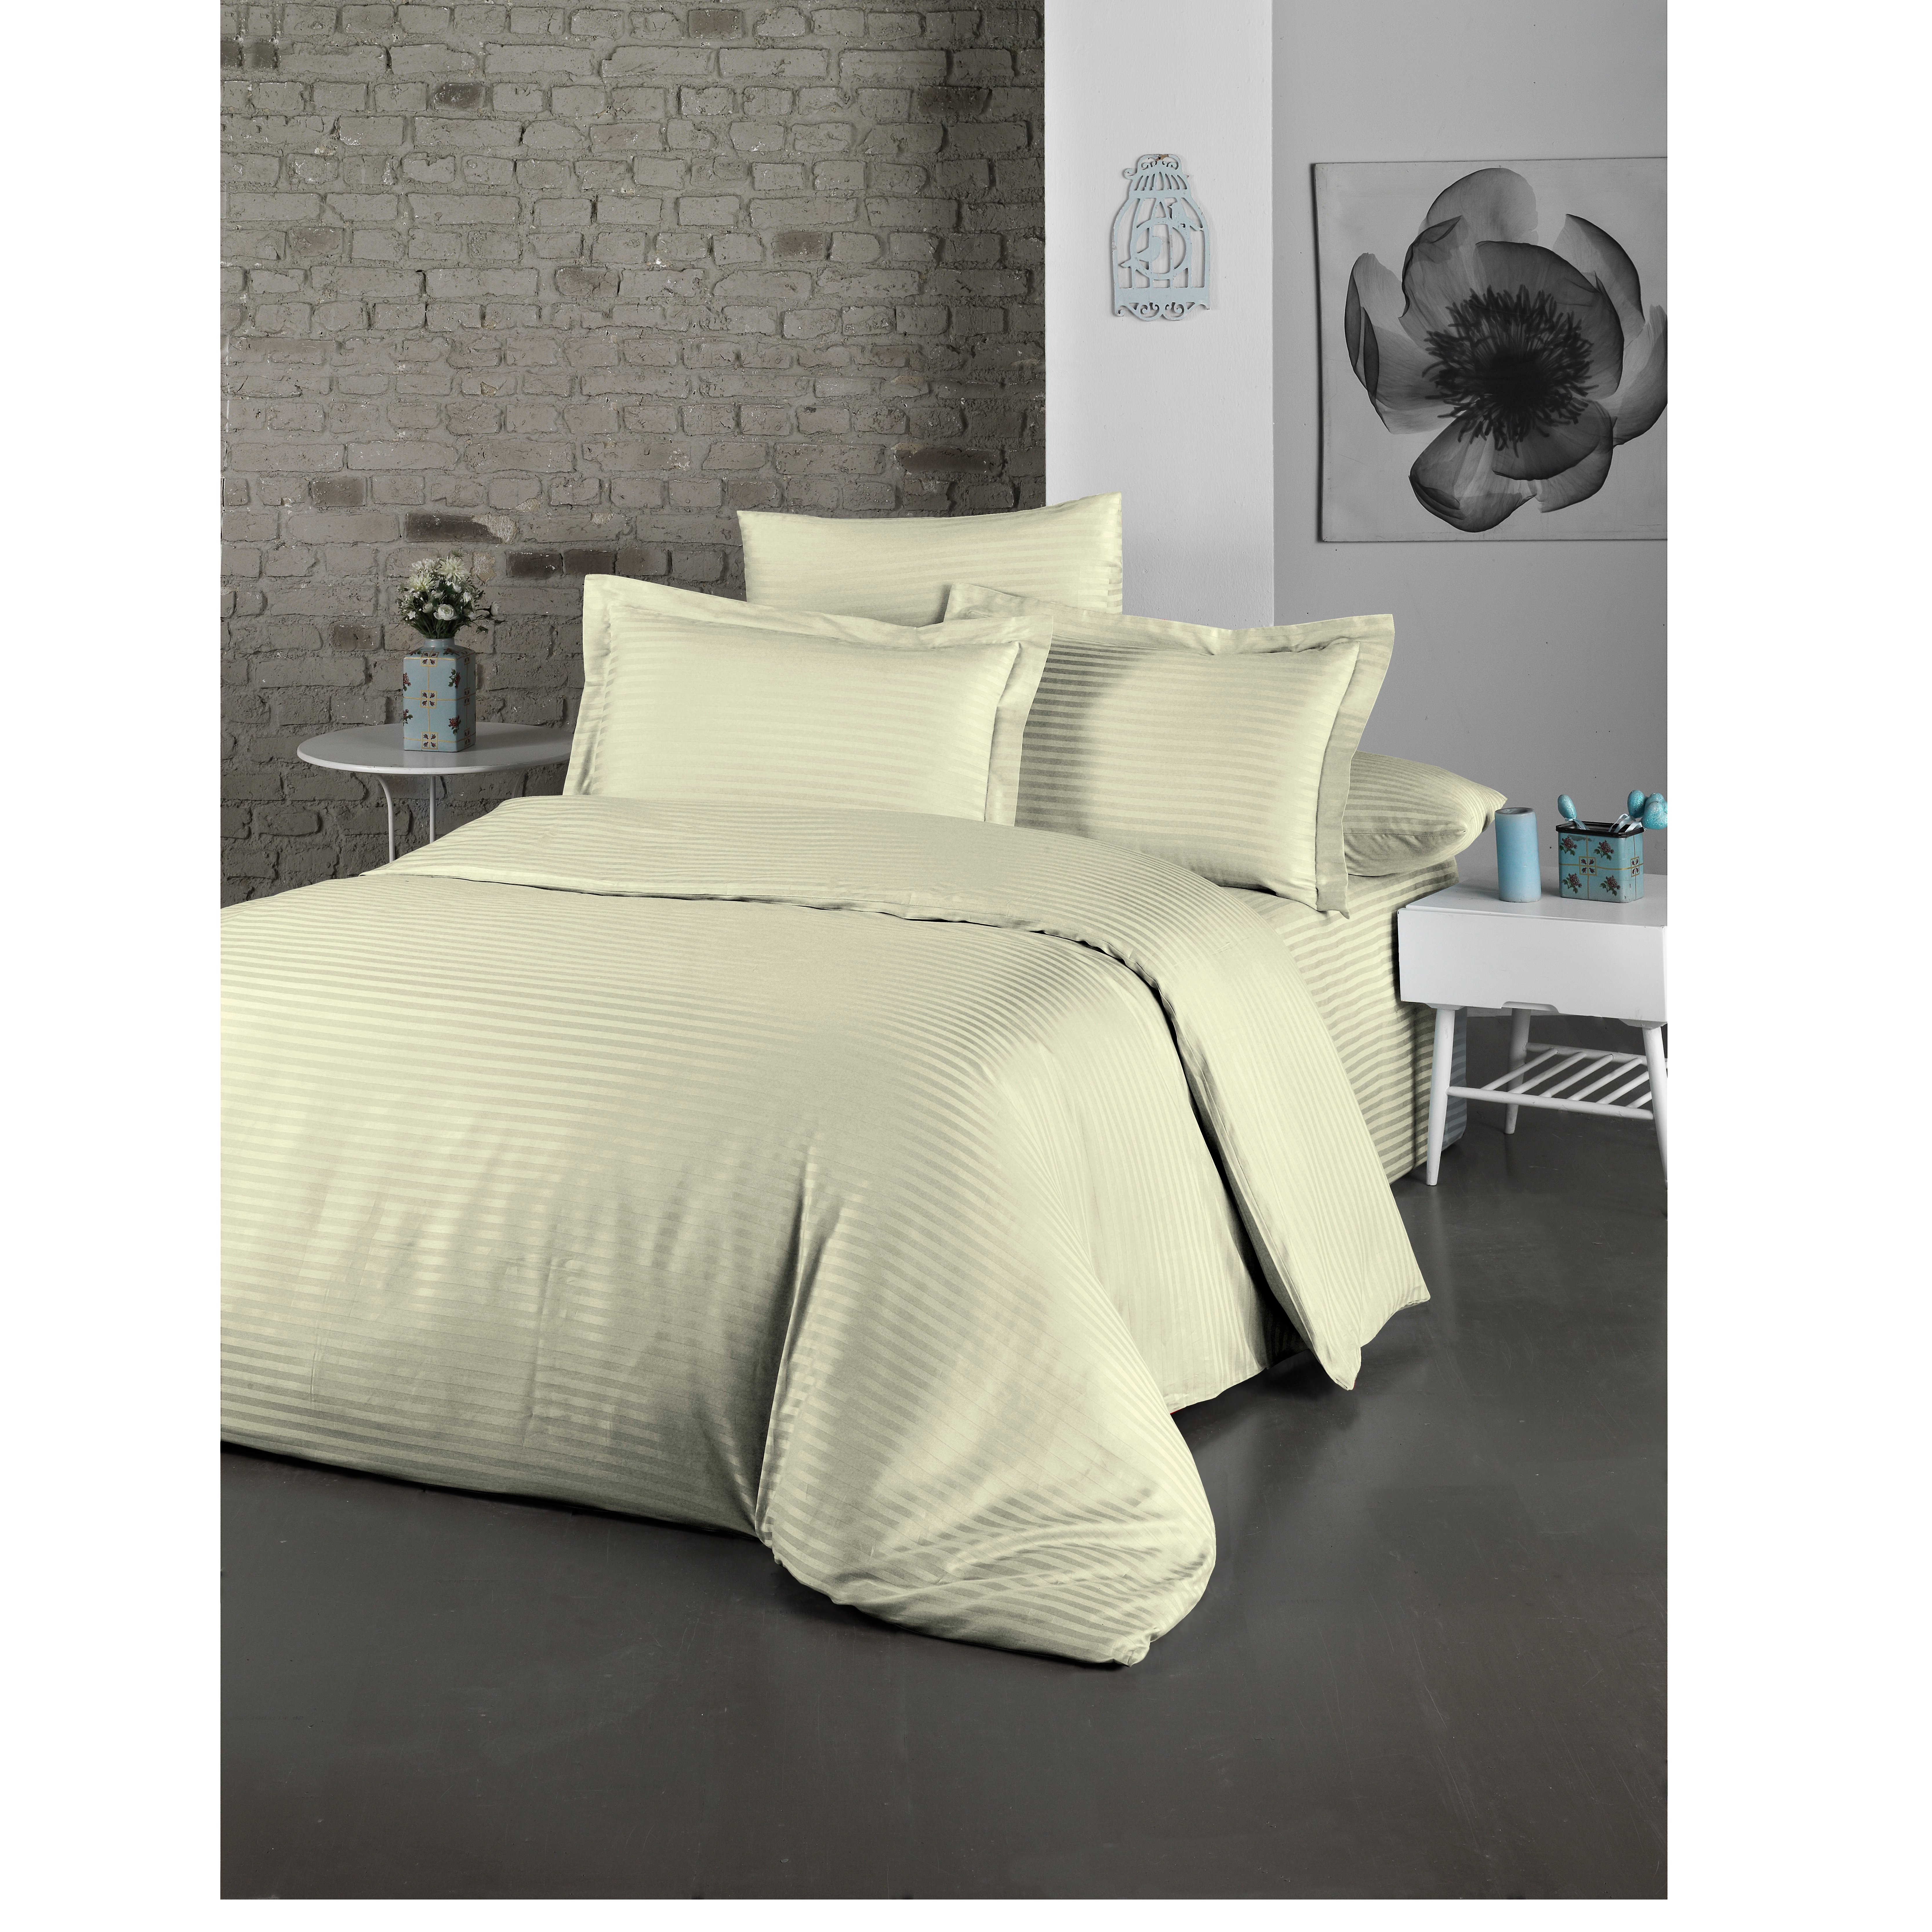 Комплект постельного белья LightHouse Exclusive Sateen Stripe Lux, сатин, евростандарт, 220x200 см, кремовый (2200000550163) - фото 1